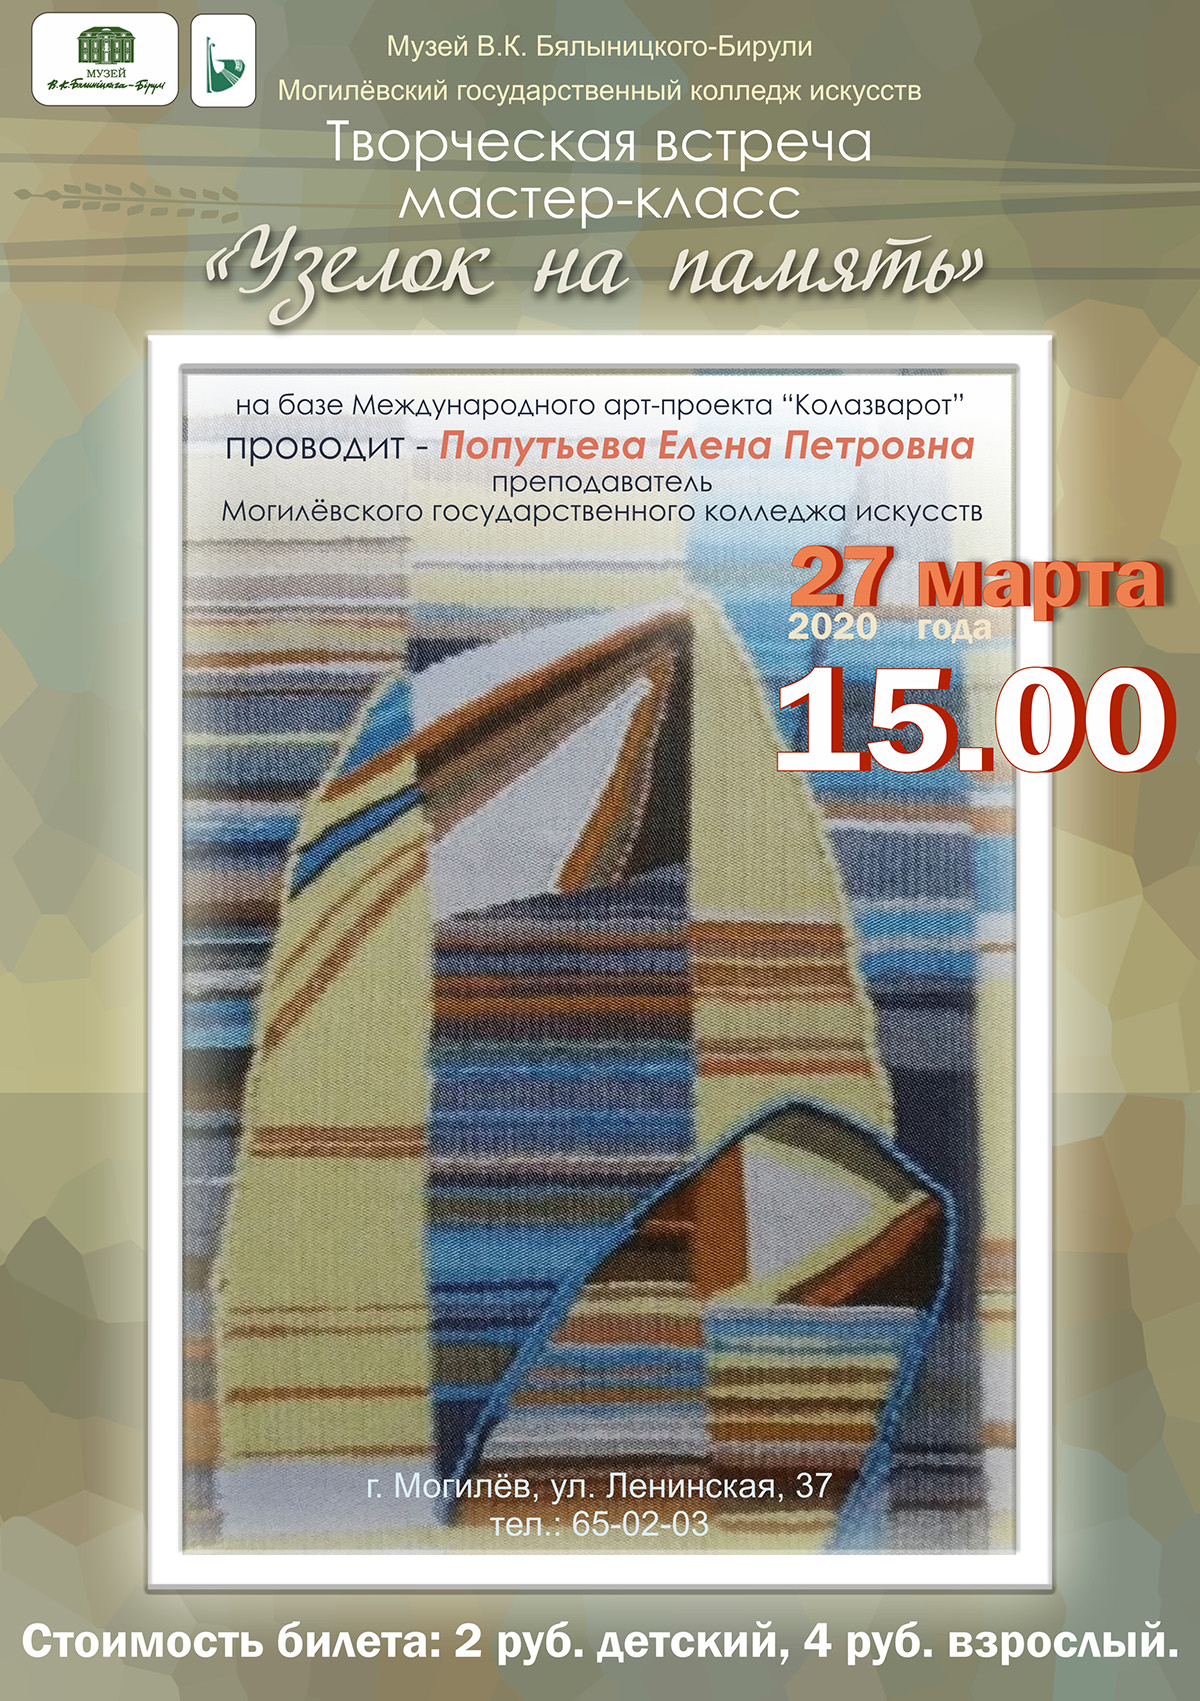 Могилевчан приглашают на мастер-класс по художественному текстилю «Узелок на память» 27 марта